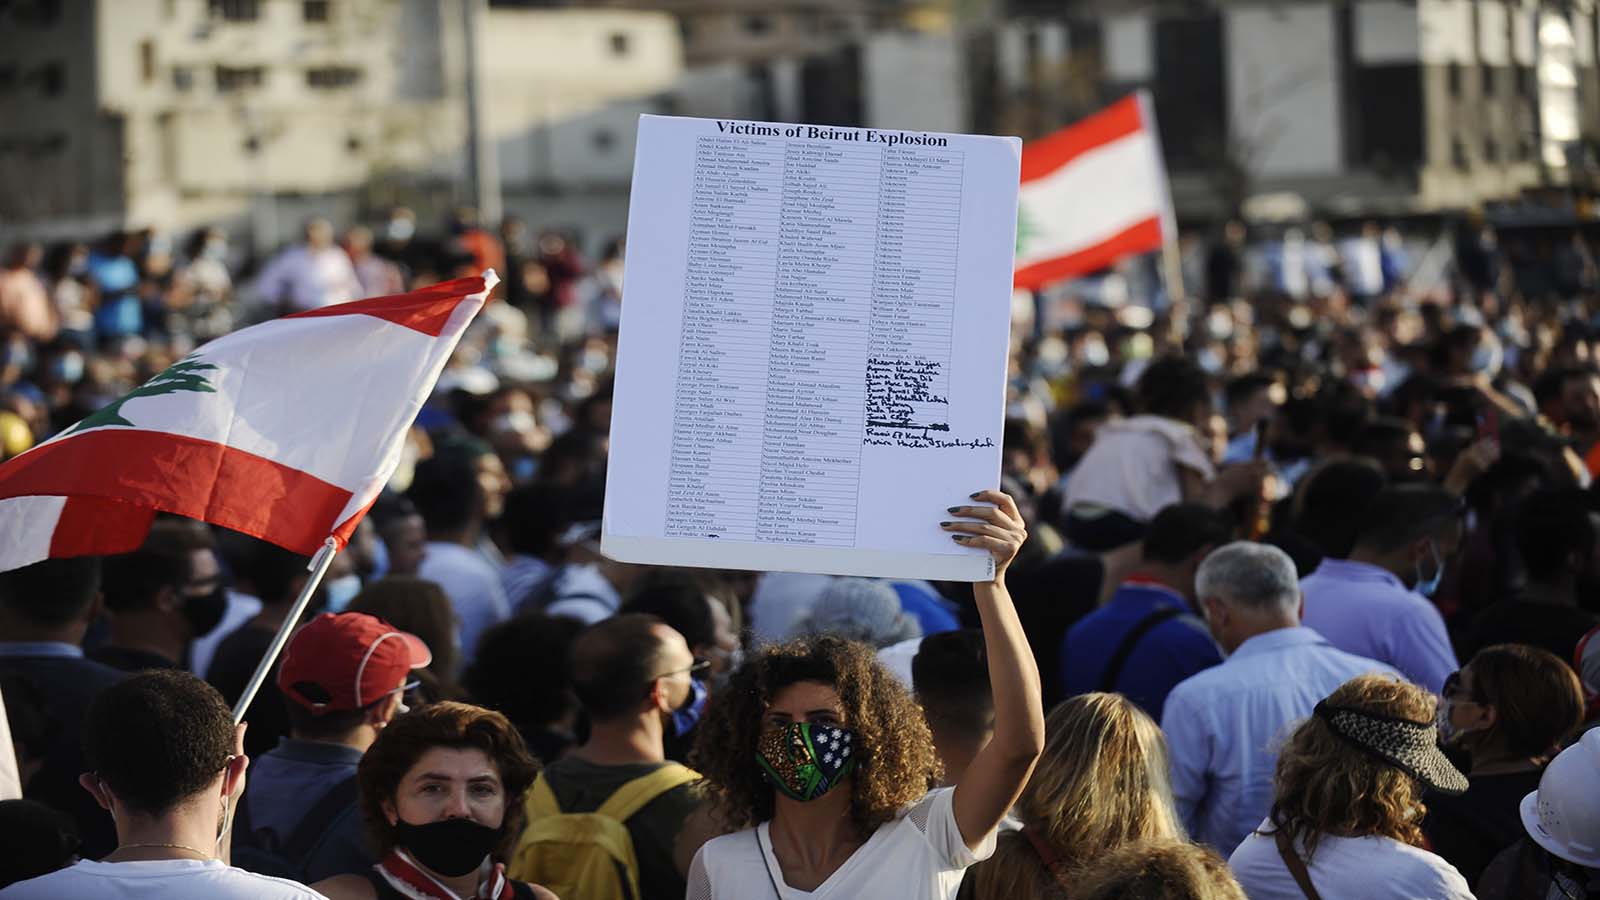 خبراء الأمم المتّحدة يطالبون بتحقيق العدالة في انفجار بيروت